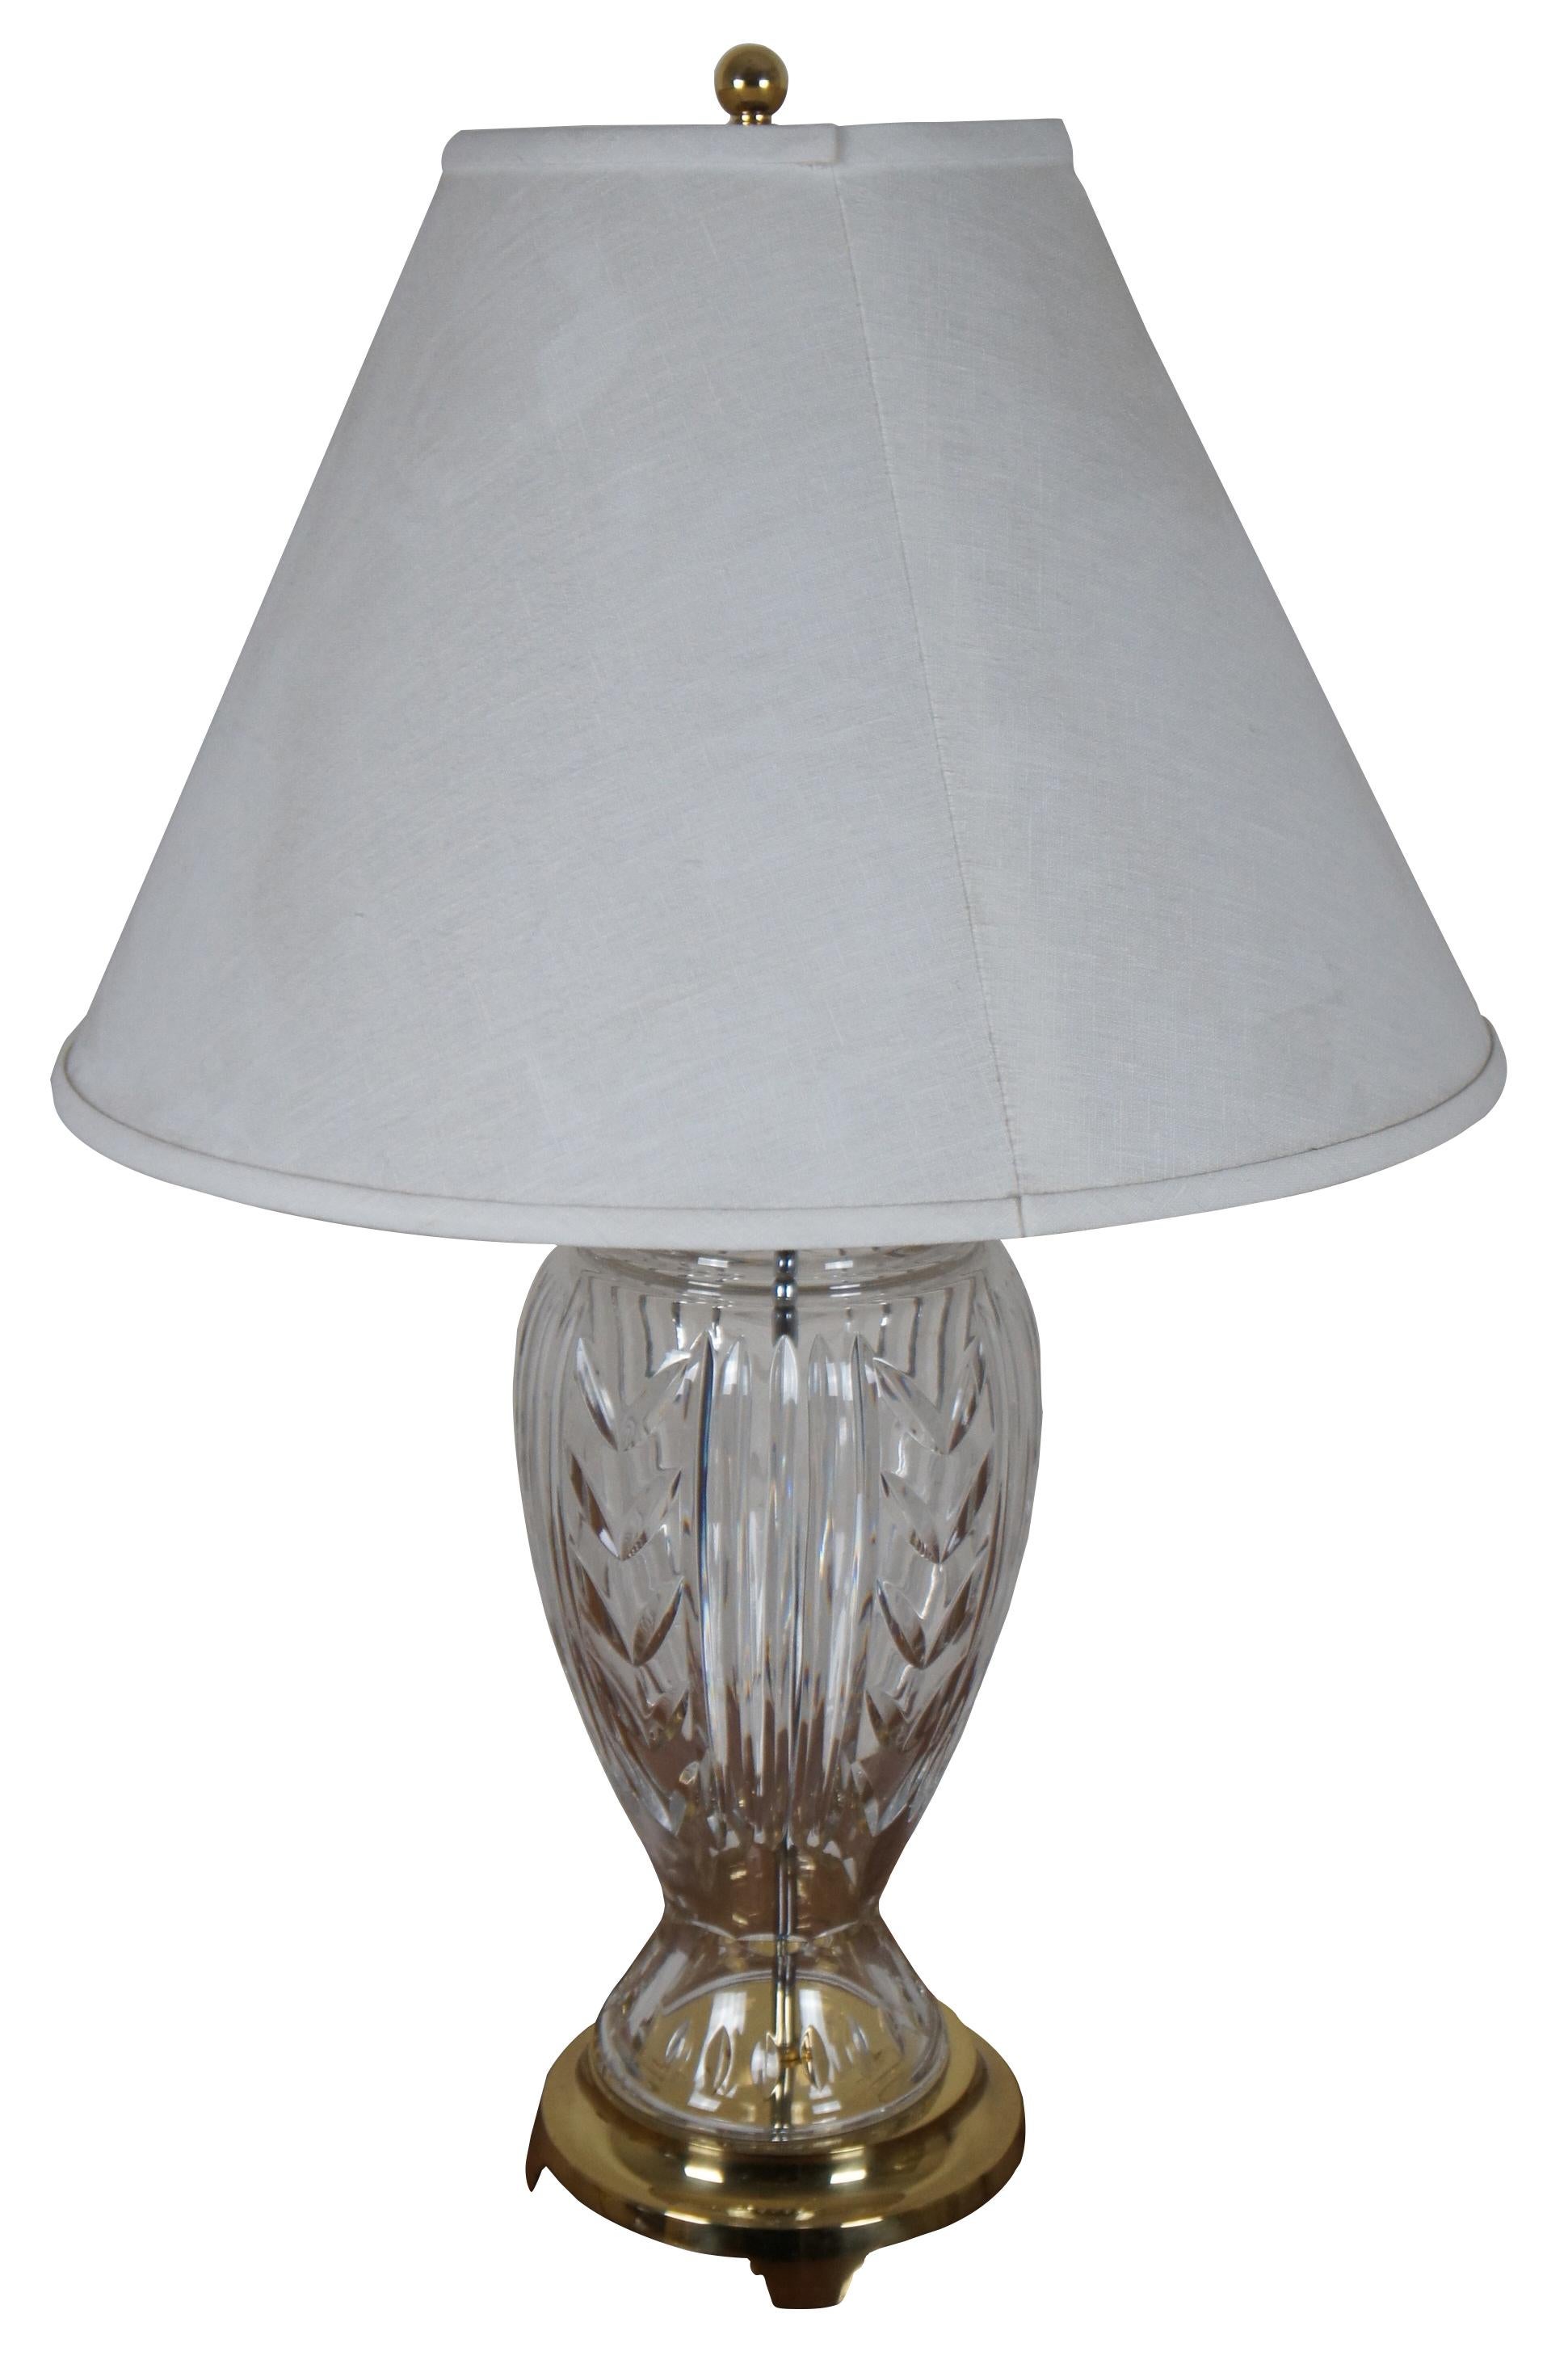 Lampe de table vintage en cristal irlandais Waterford de style Hollywood Regency, motif Glencar, avec base et plateau en laiton, et abat-jour blanc.

Mesures : 7,5 x 24 / abat-jour - 20 x 14 / hauteur jusqu'au sommet de l'épis de faîtage 32